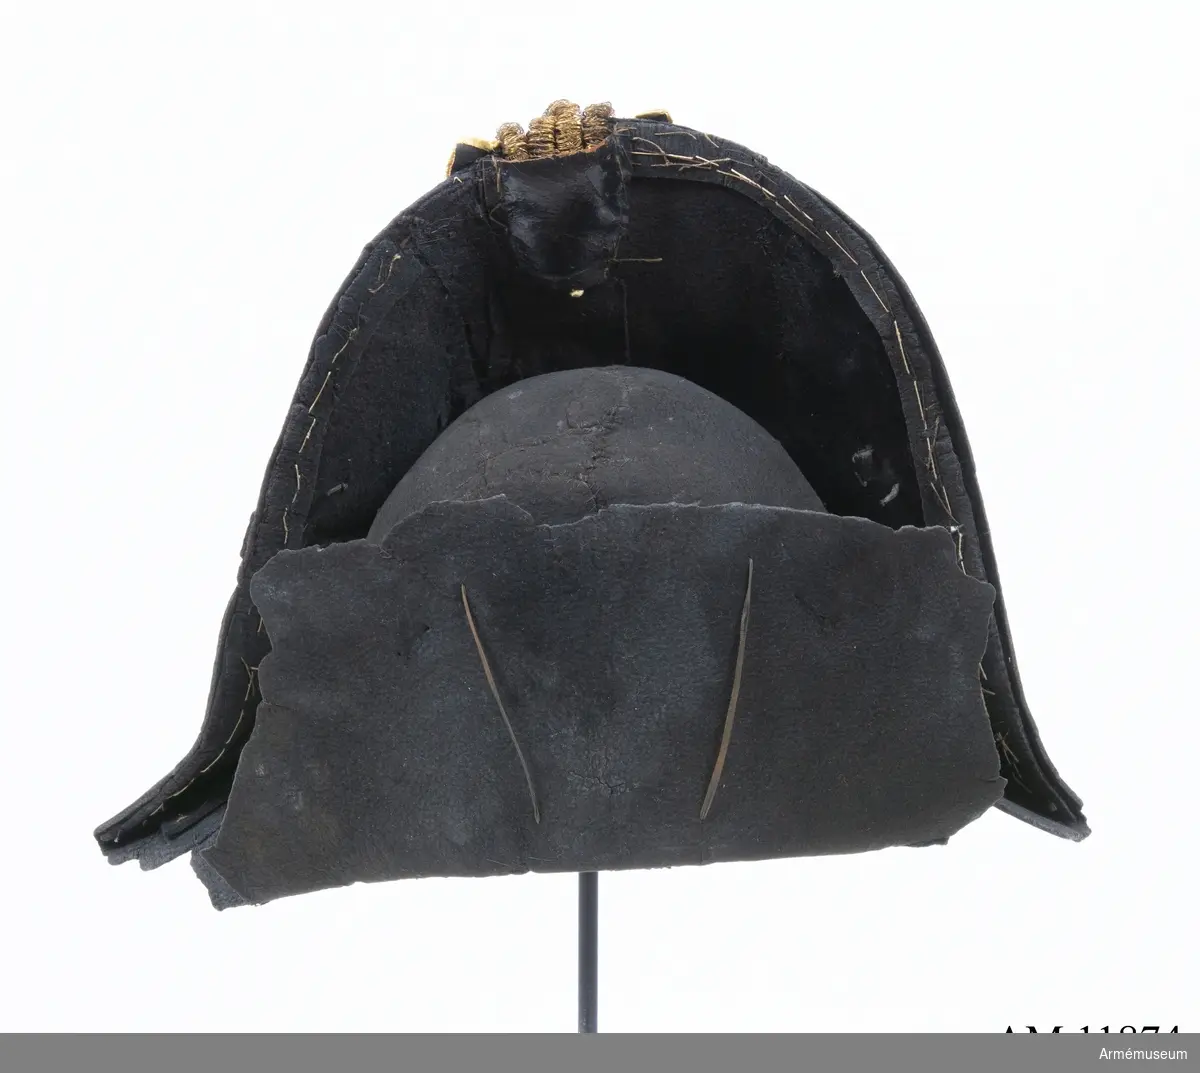 Grupp C I.
Trekantig hatt av filt, 1800-talets början.